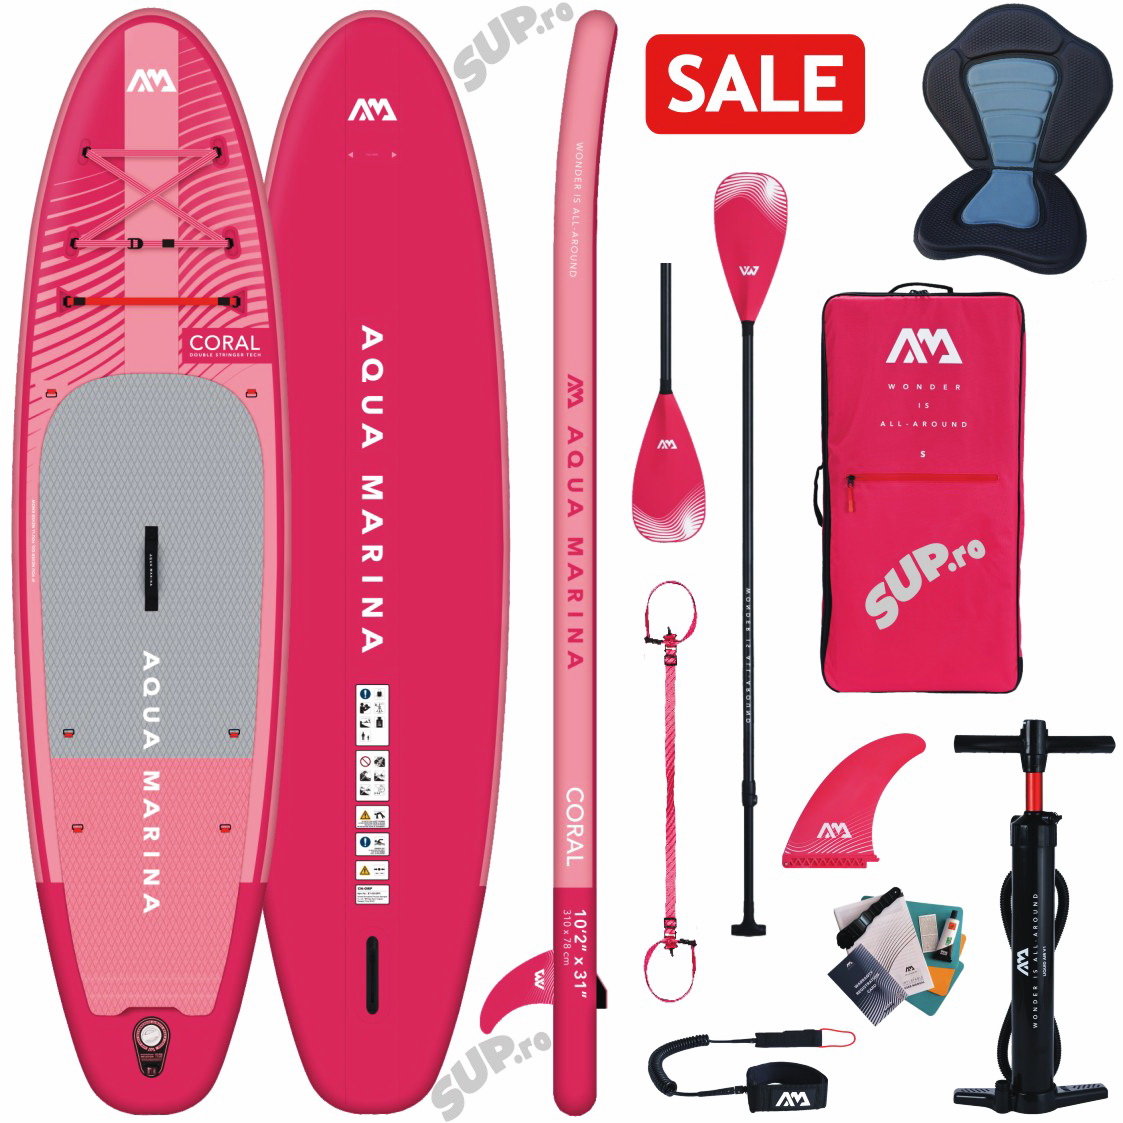 CORAL pink kayak